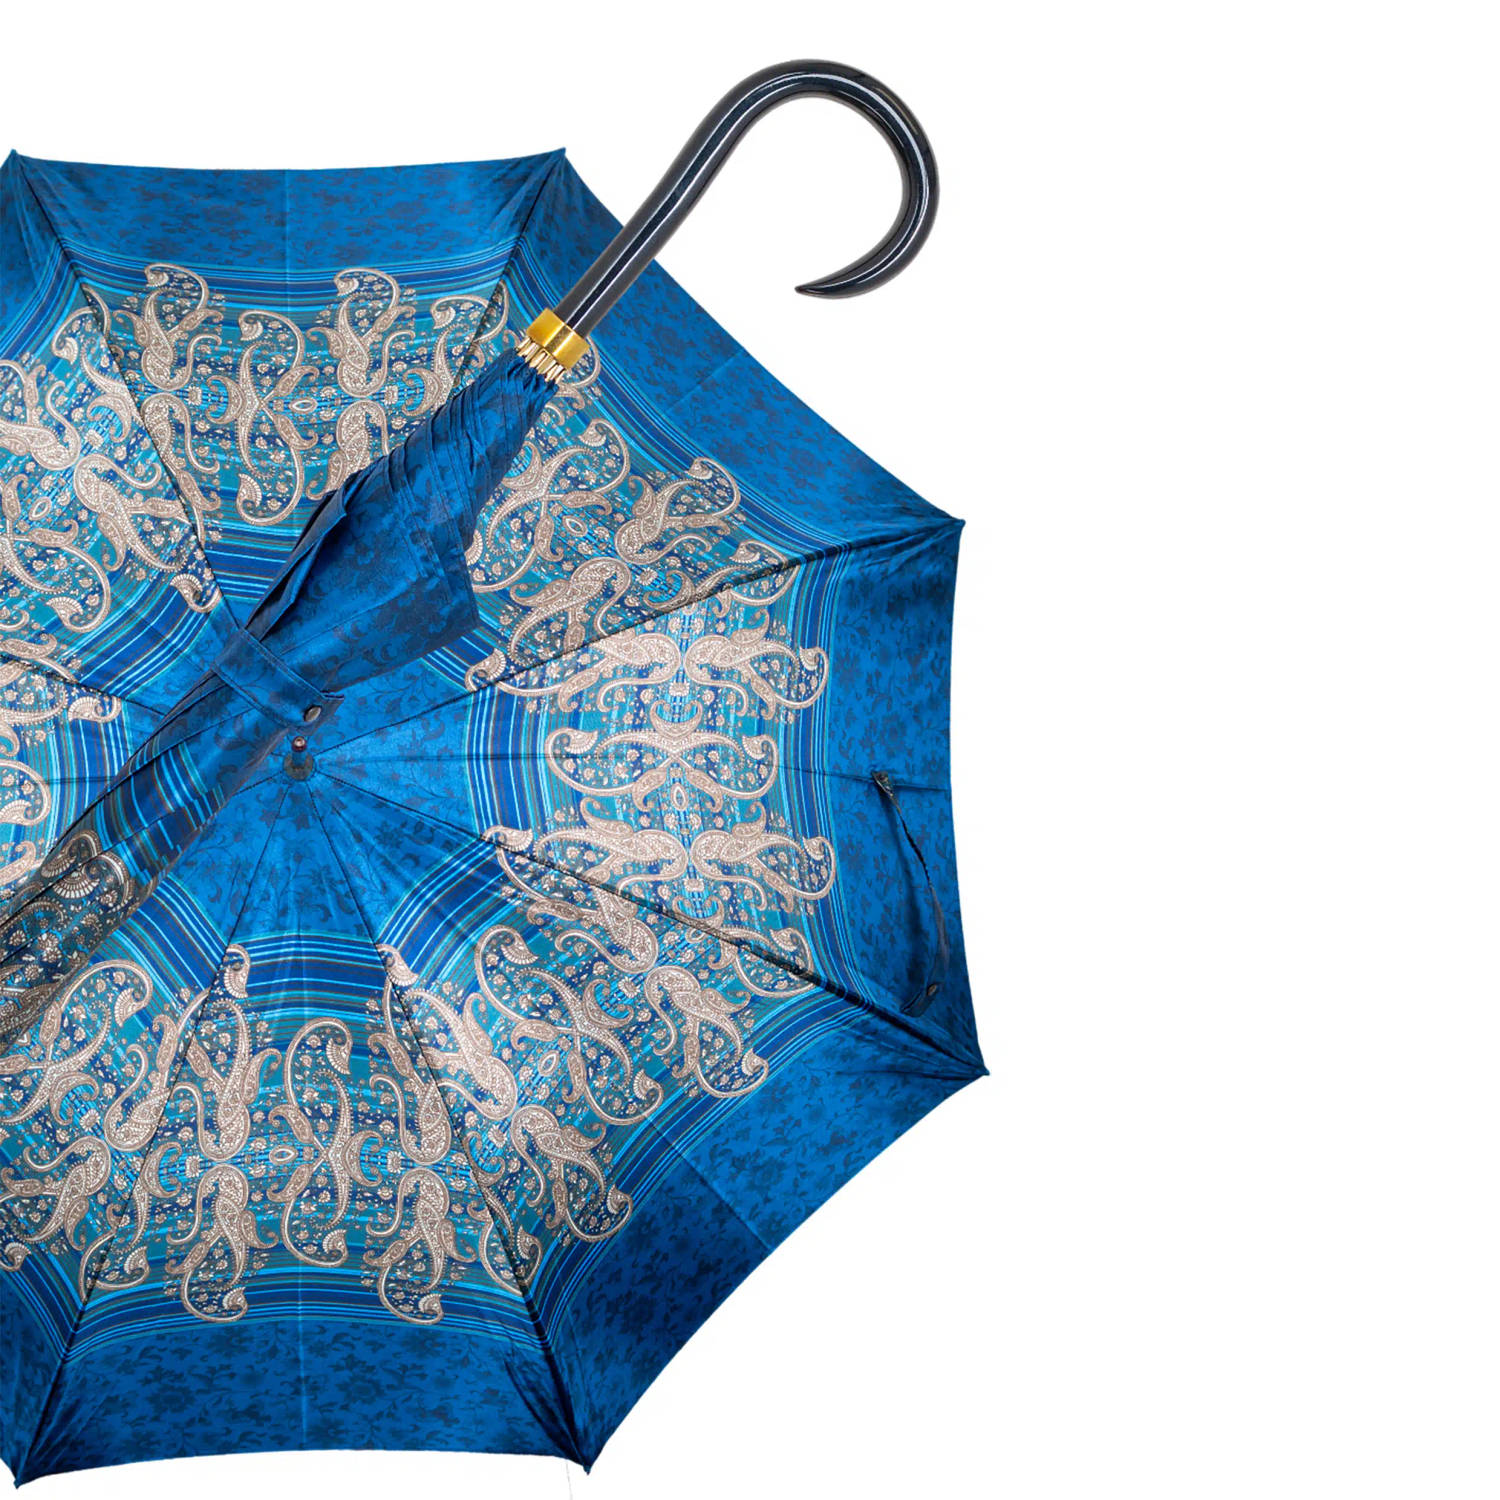 Gastrock Paraplu - Italiaanse satijn stof - Blauw - Luxe paraplu - Lengte 91 cm - Doorsnede doek 61 cm - Aluminium frame - Handvat van metallic gelakt esdoornhout - Paraplu voor da